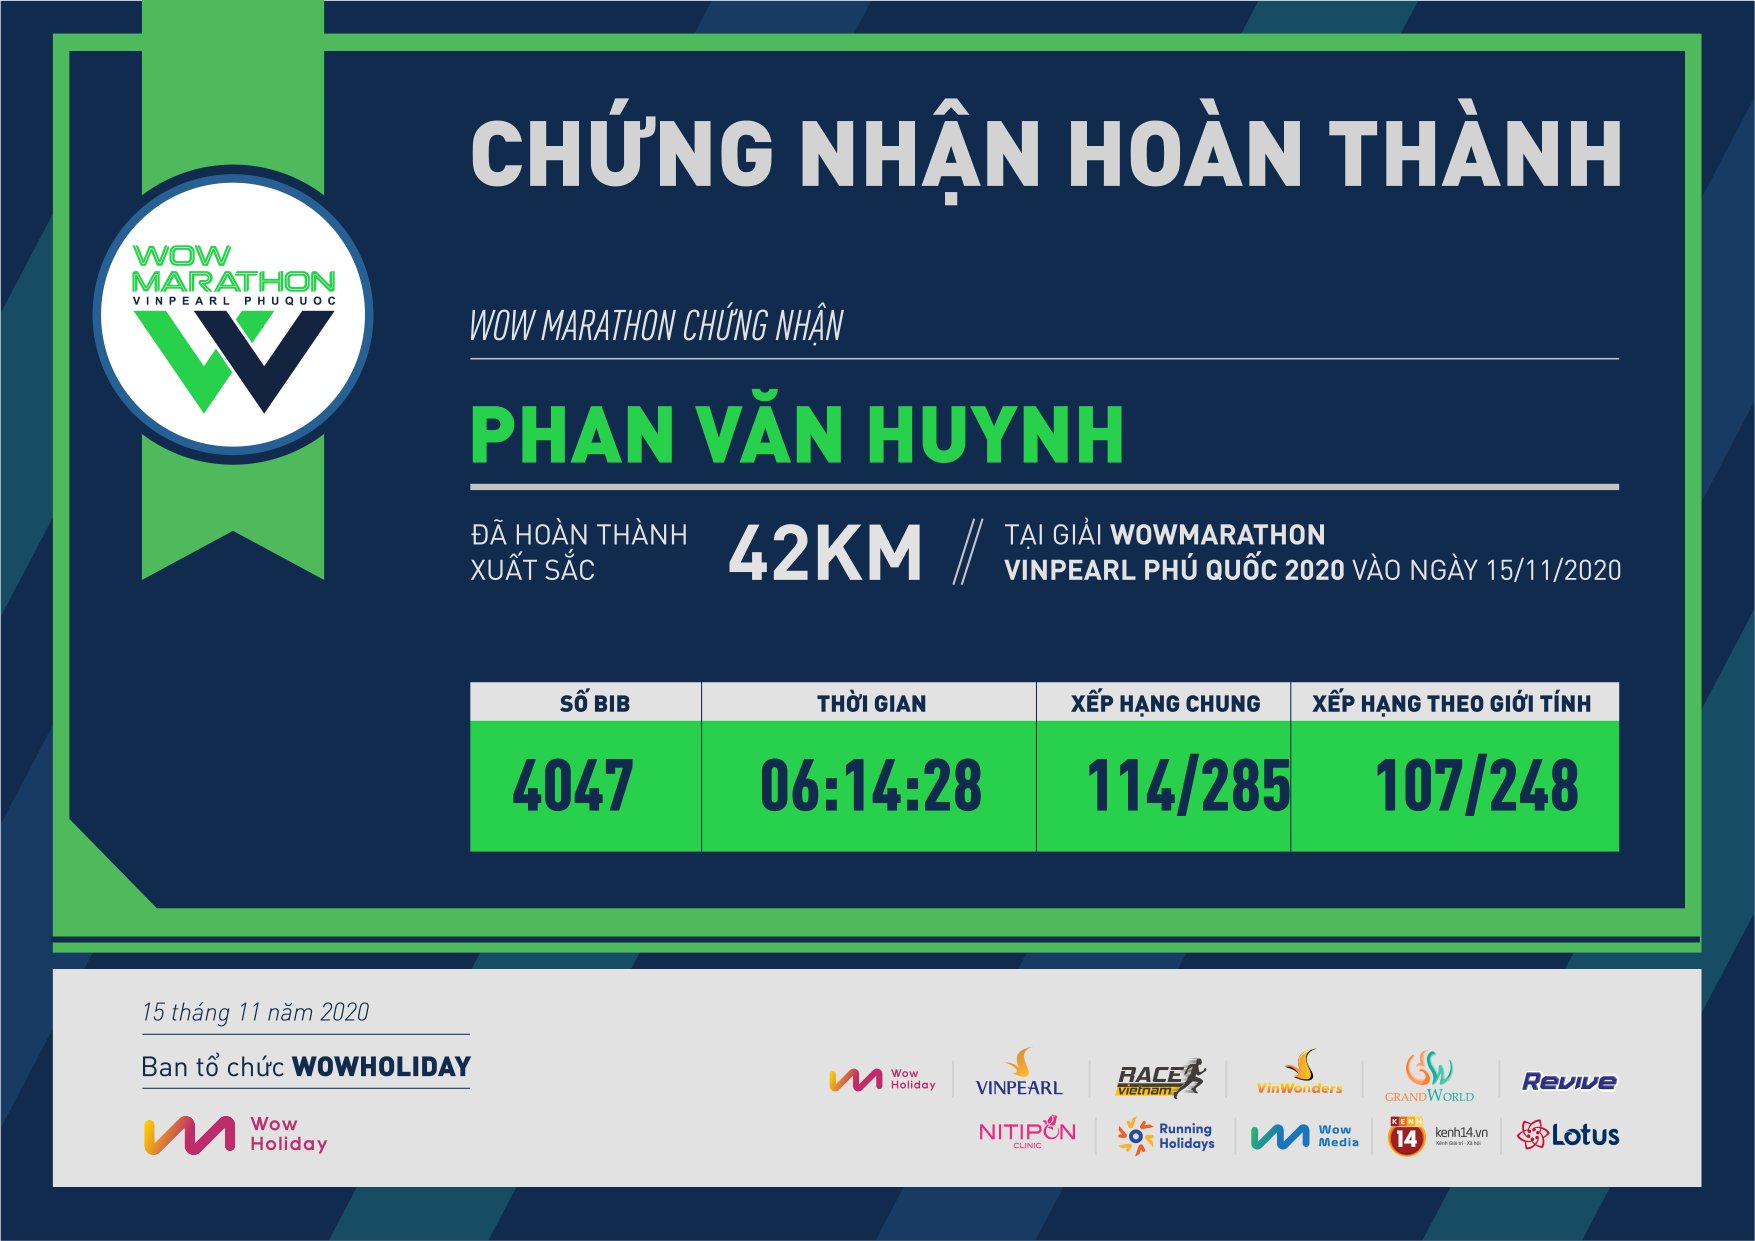 4047 - Phan Văn Huynh